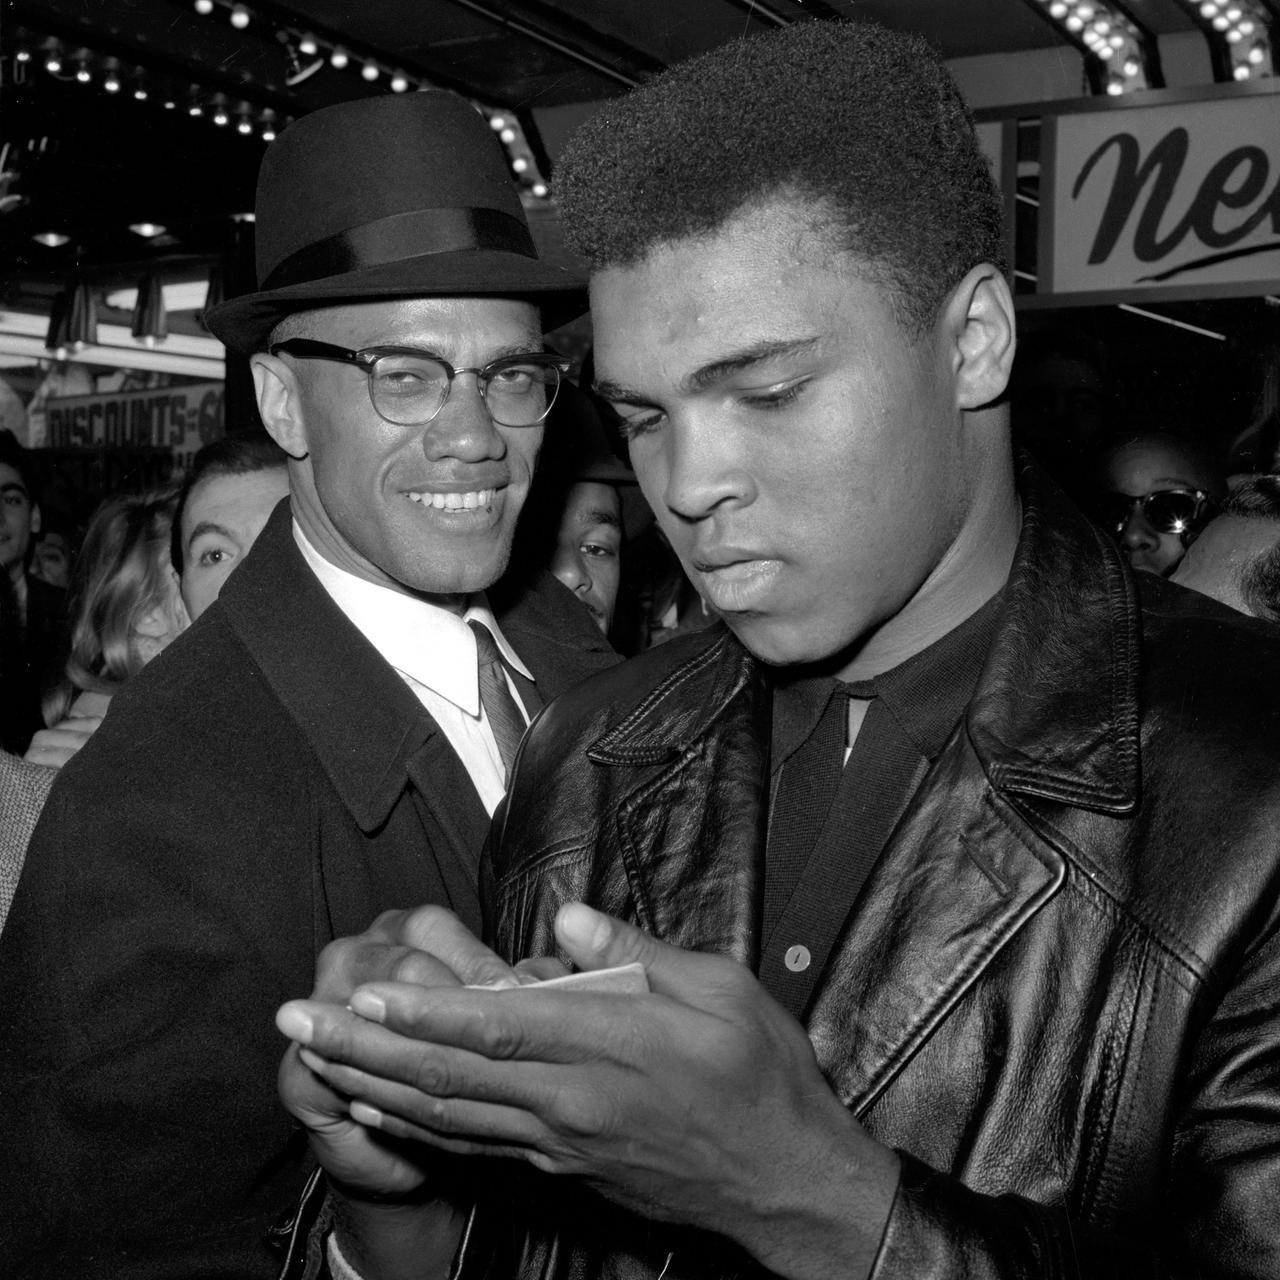 Der Boxer Muhammad Ali, in einer schwarzen Lederjacke, schreibt etwas auf einen Zettel in seiner linken Hand, hinter ihm steht der Bürgerrechtler Malcolm X in einem schwarzem Anzug und mit schwarzem Hut.